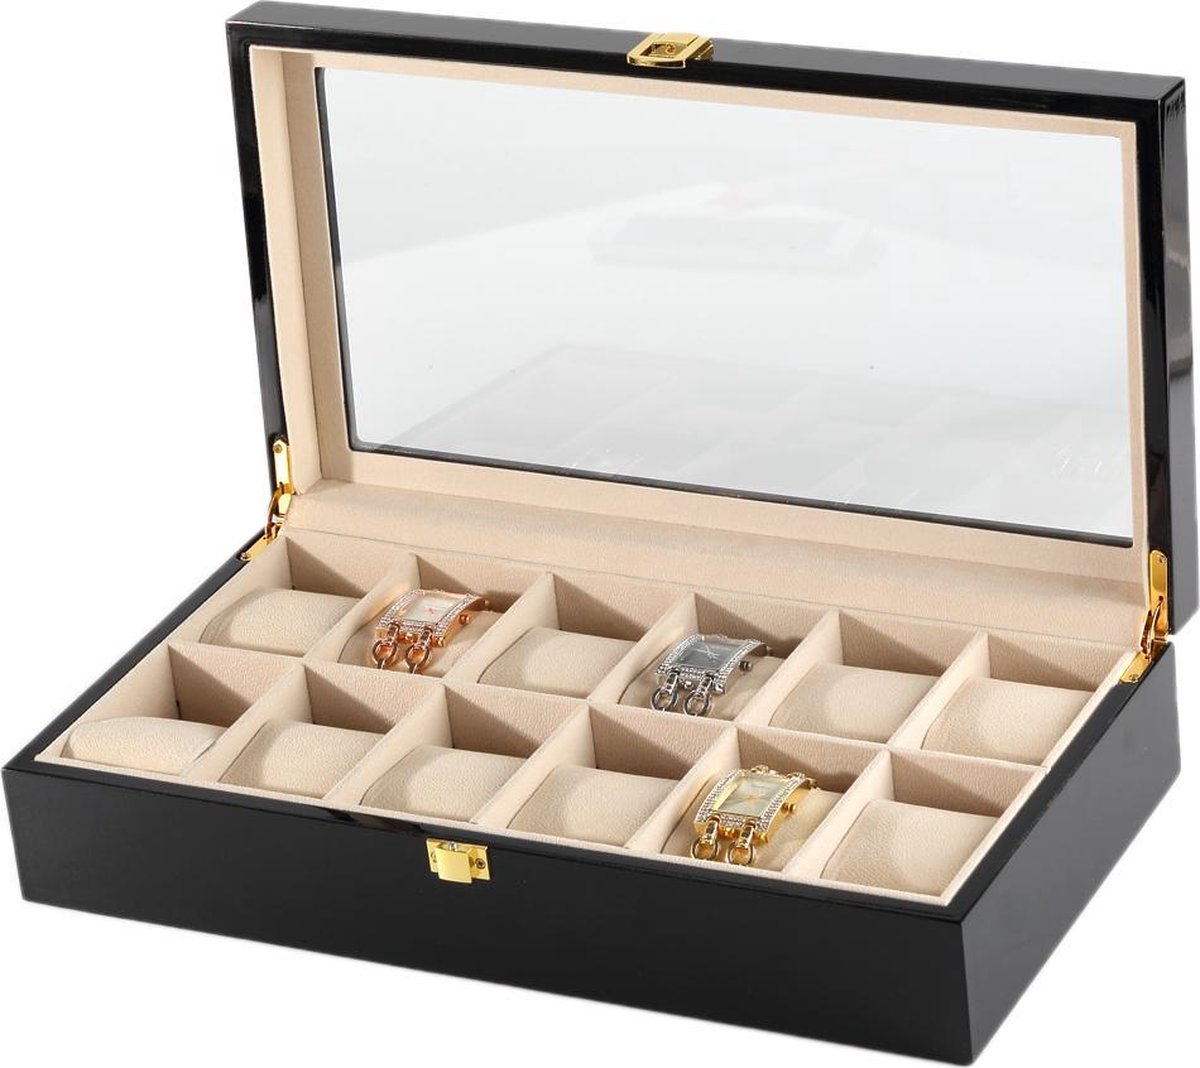 Luxe Horlogedoos - 12 compartimenten met kussentjes - voor mannen en vrouwen horloges zwart - IMPAQT